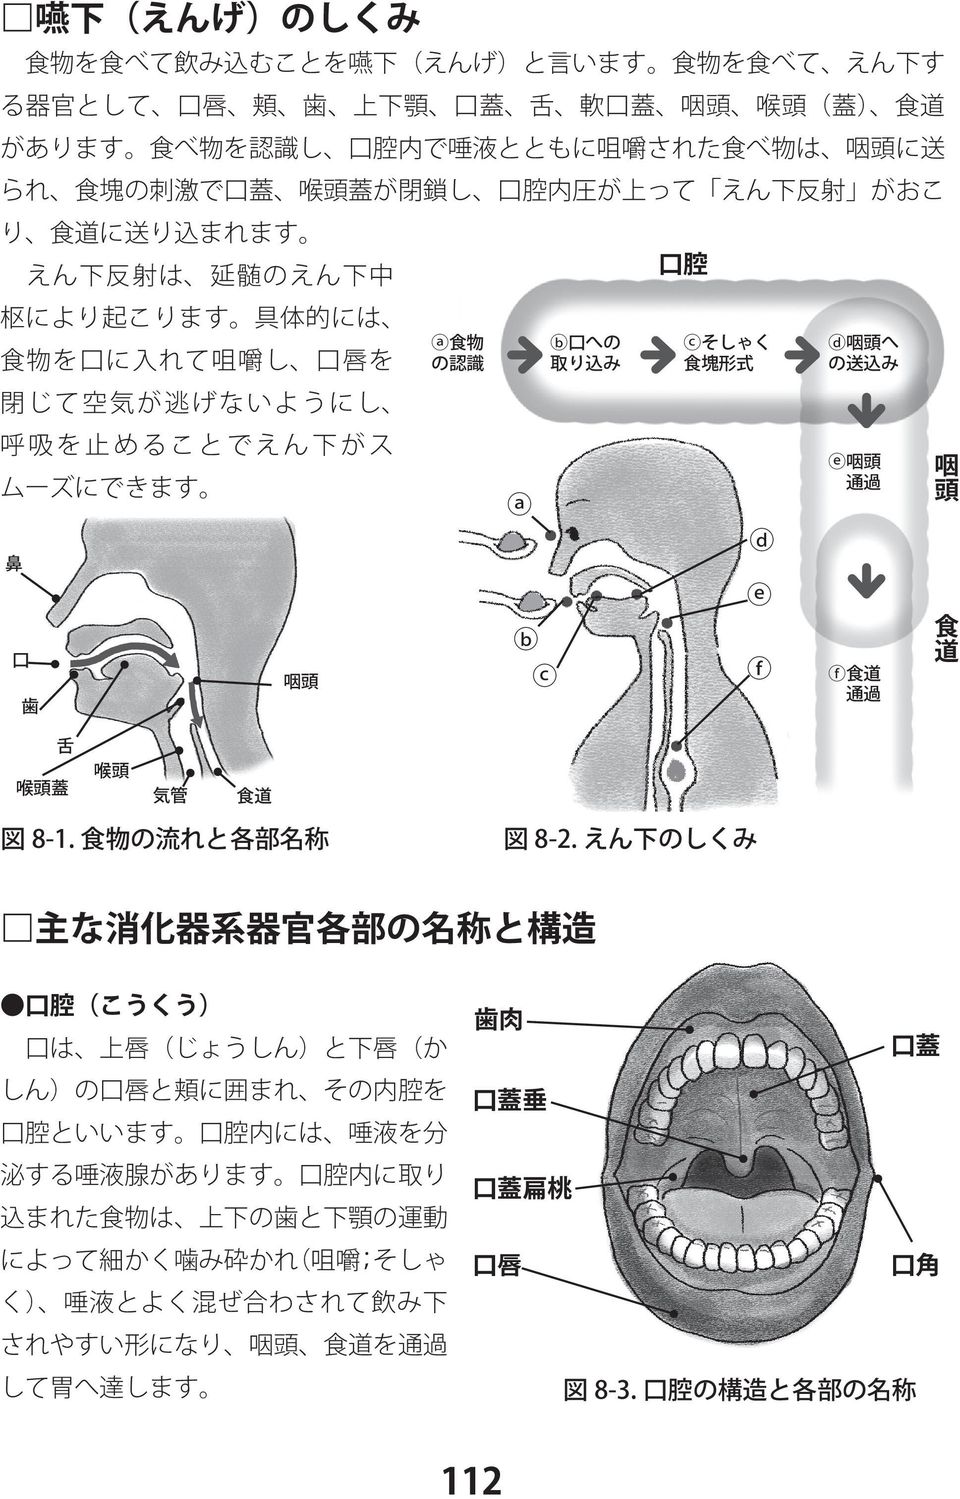 咽頭 呼吸を止めることでえん下がス 咽頭 通過 鼻 口 咽頭 歯 食道 食道 通過 舌 喉頭蓋 喉頭 気管 食道 図 8-1. 食物の流れと各部名称 図 8-2.